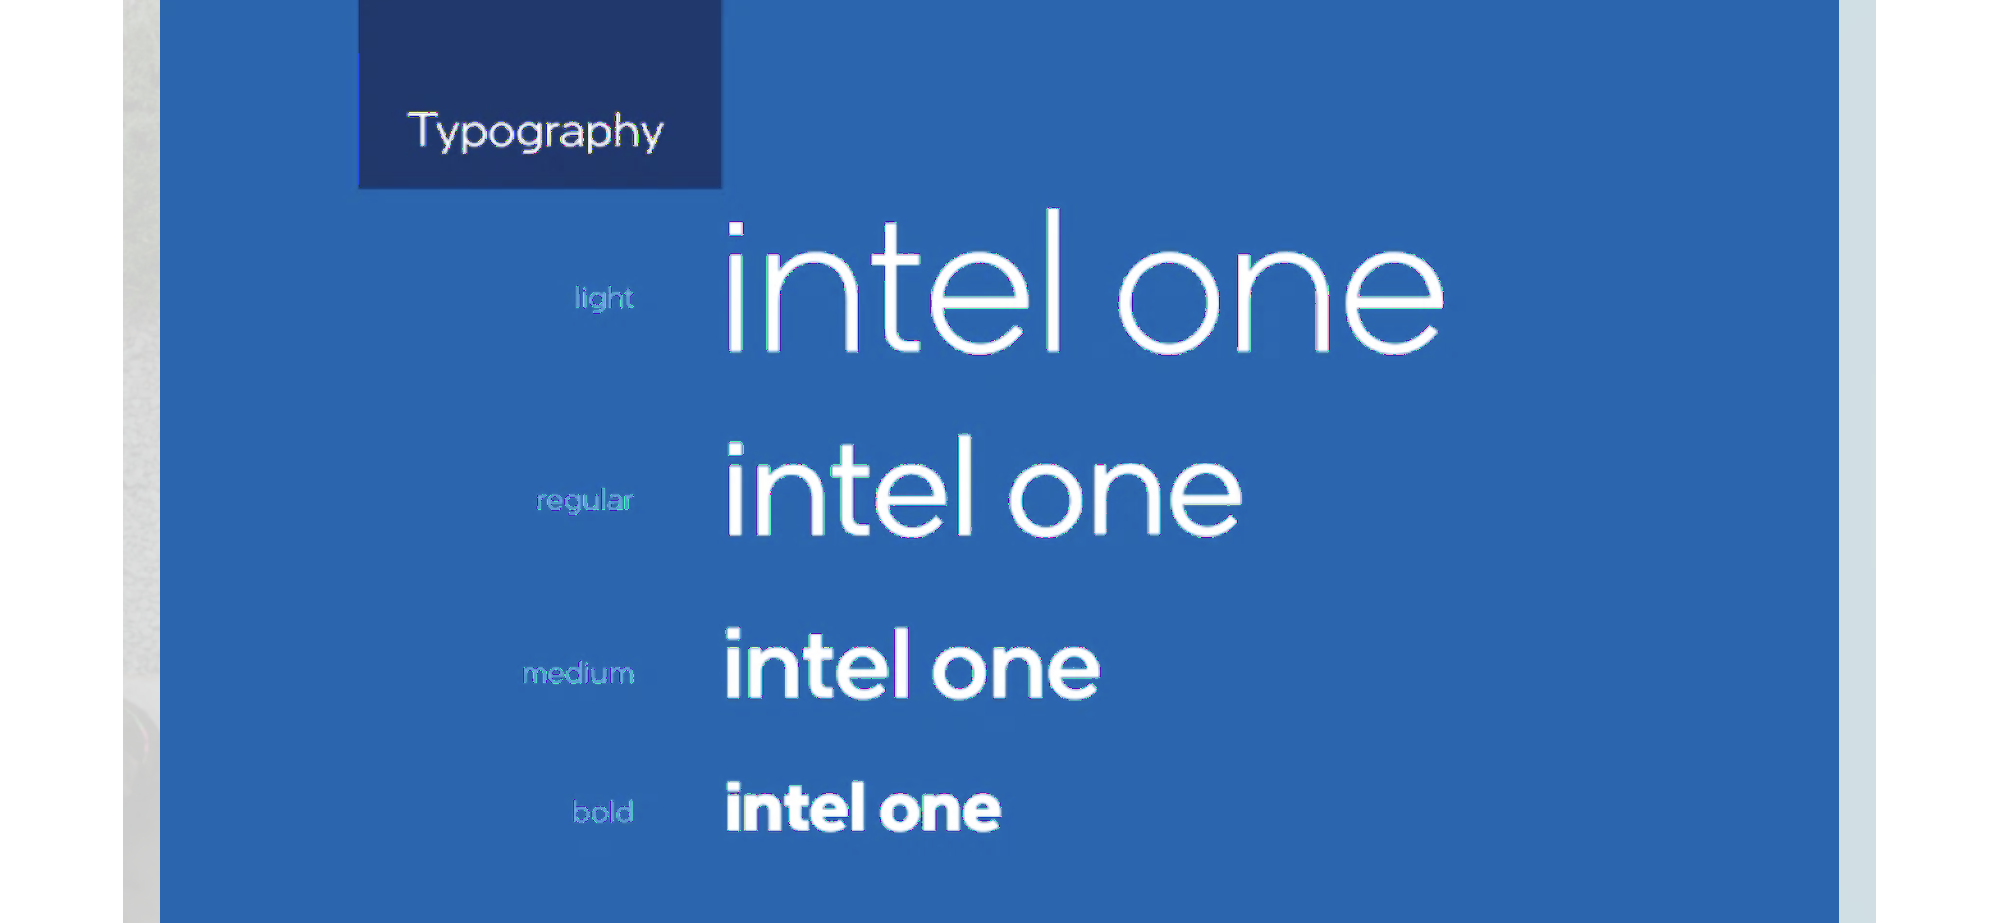 Intel tiene otro gran ejemplo de Brand Book